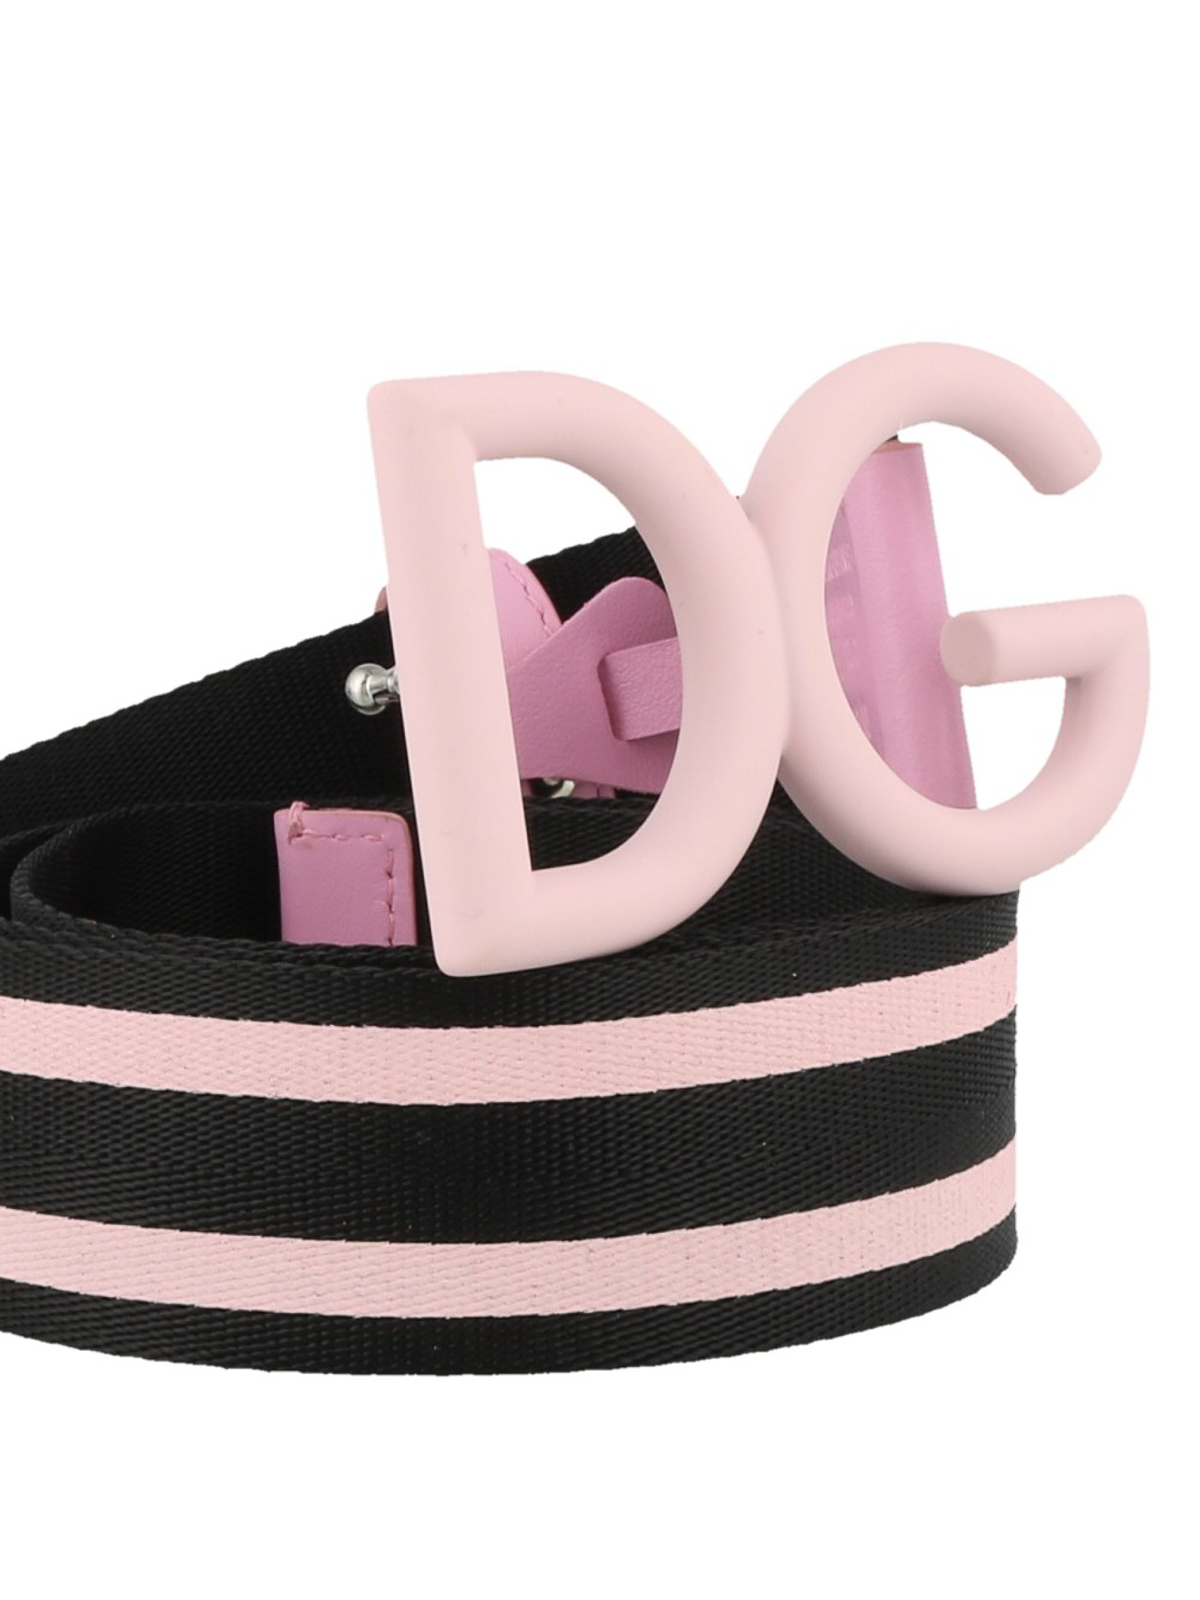 Details about   DOLCE & GABBANA Men's Belts Pink NIB Authentic 